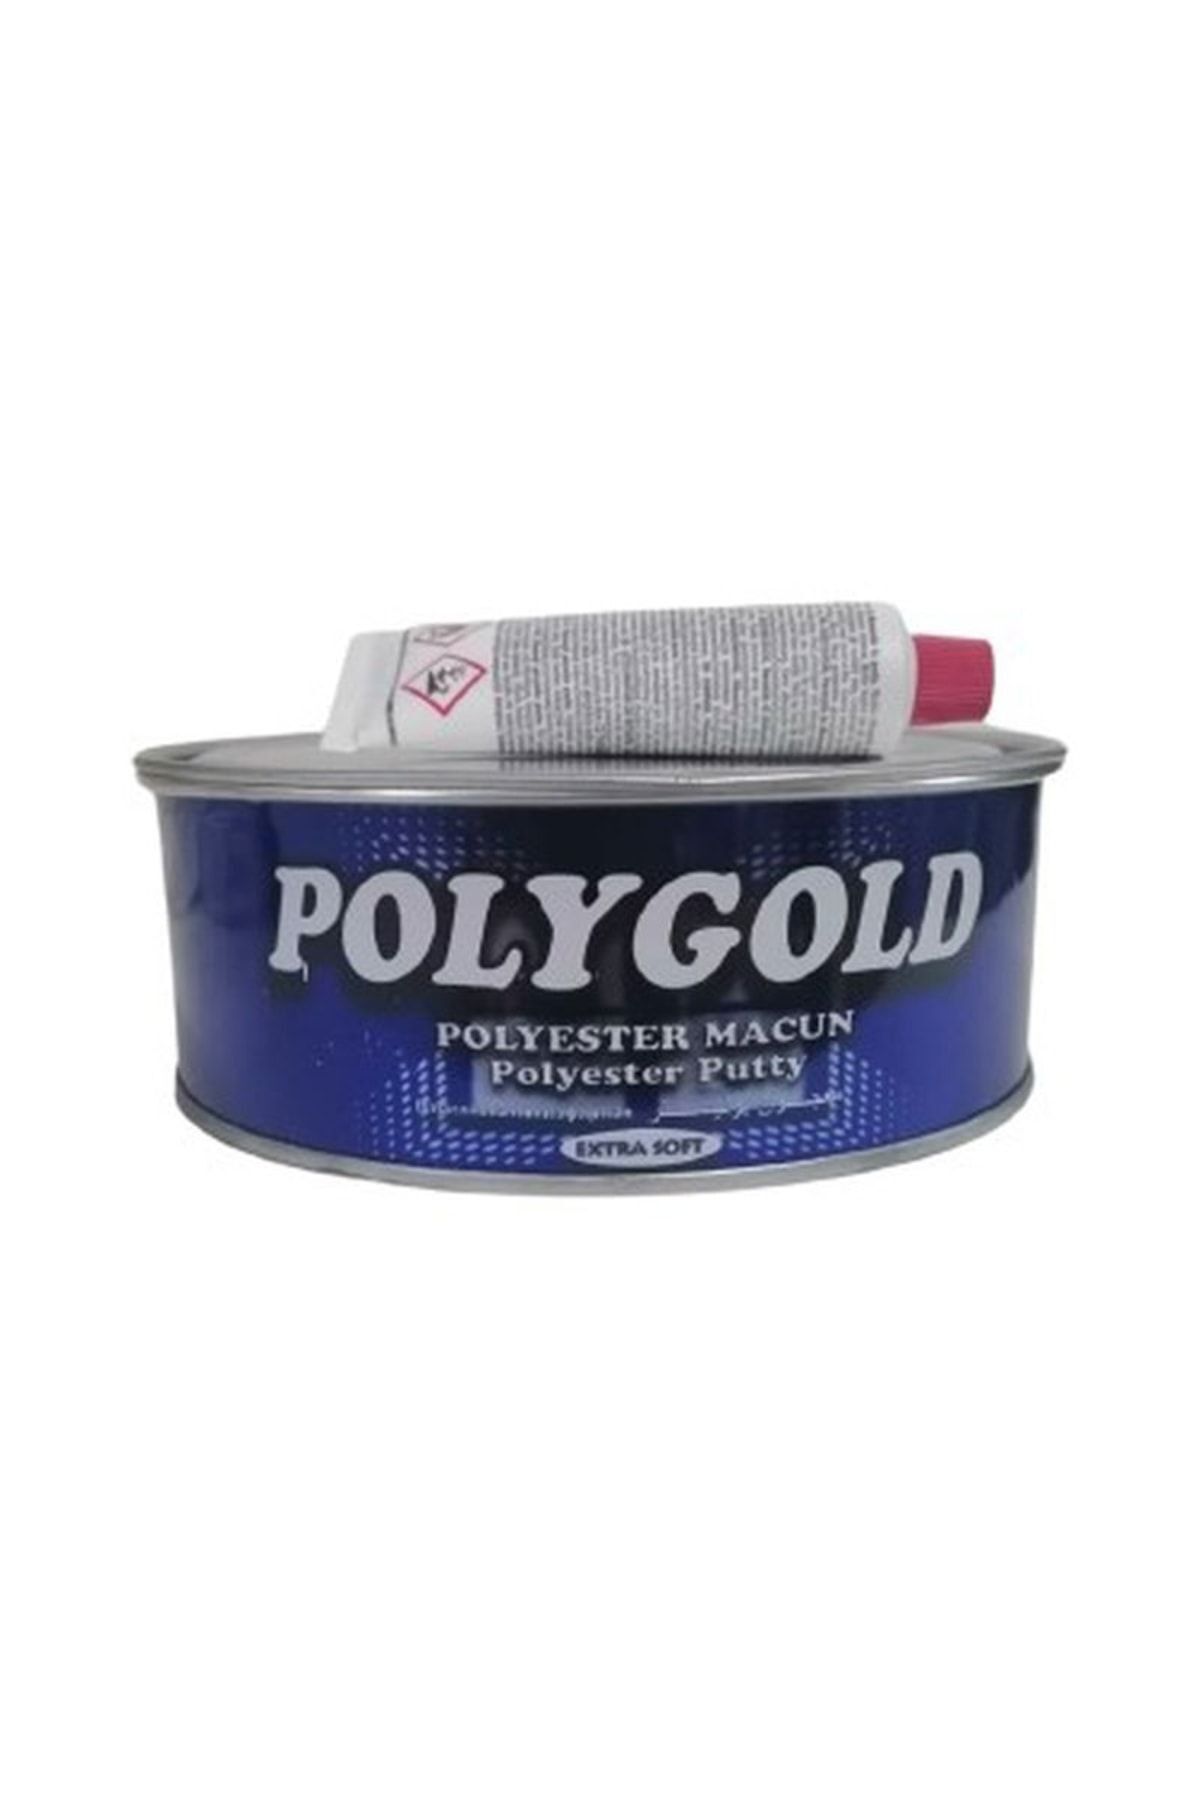 Polygold Polyester Çelik Macun